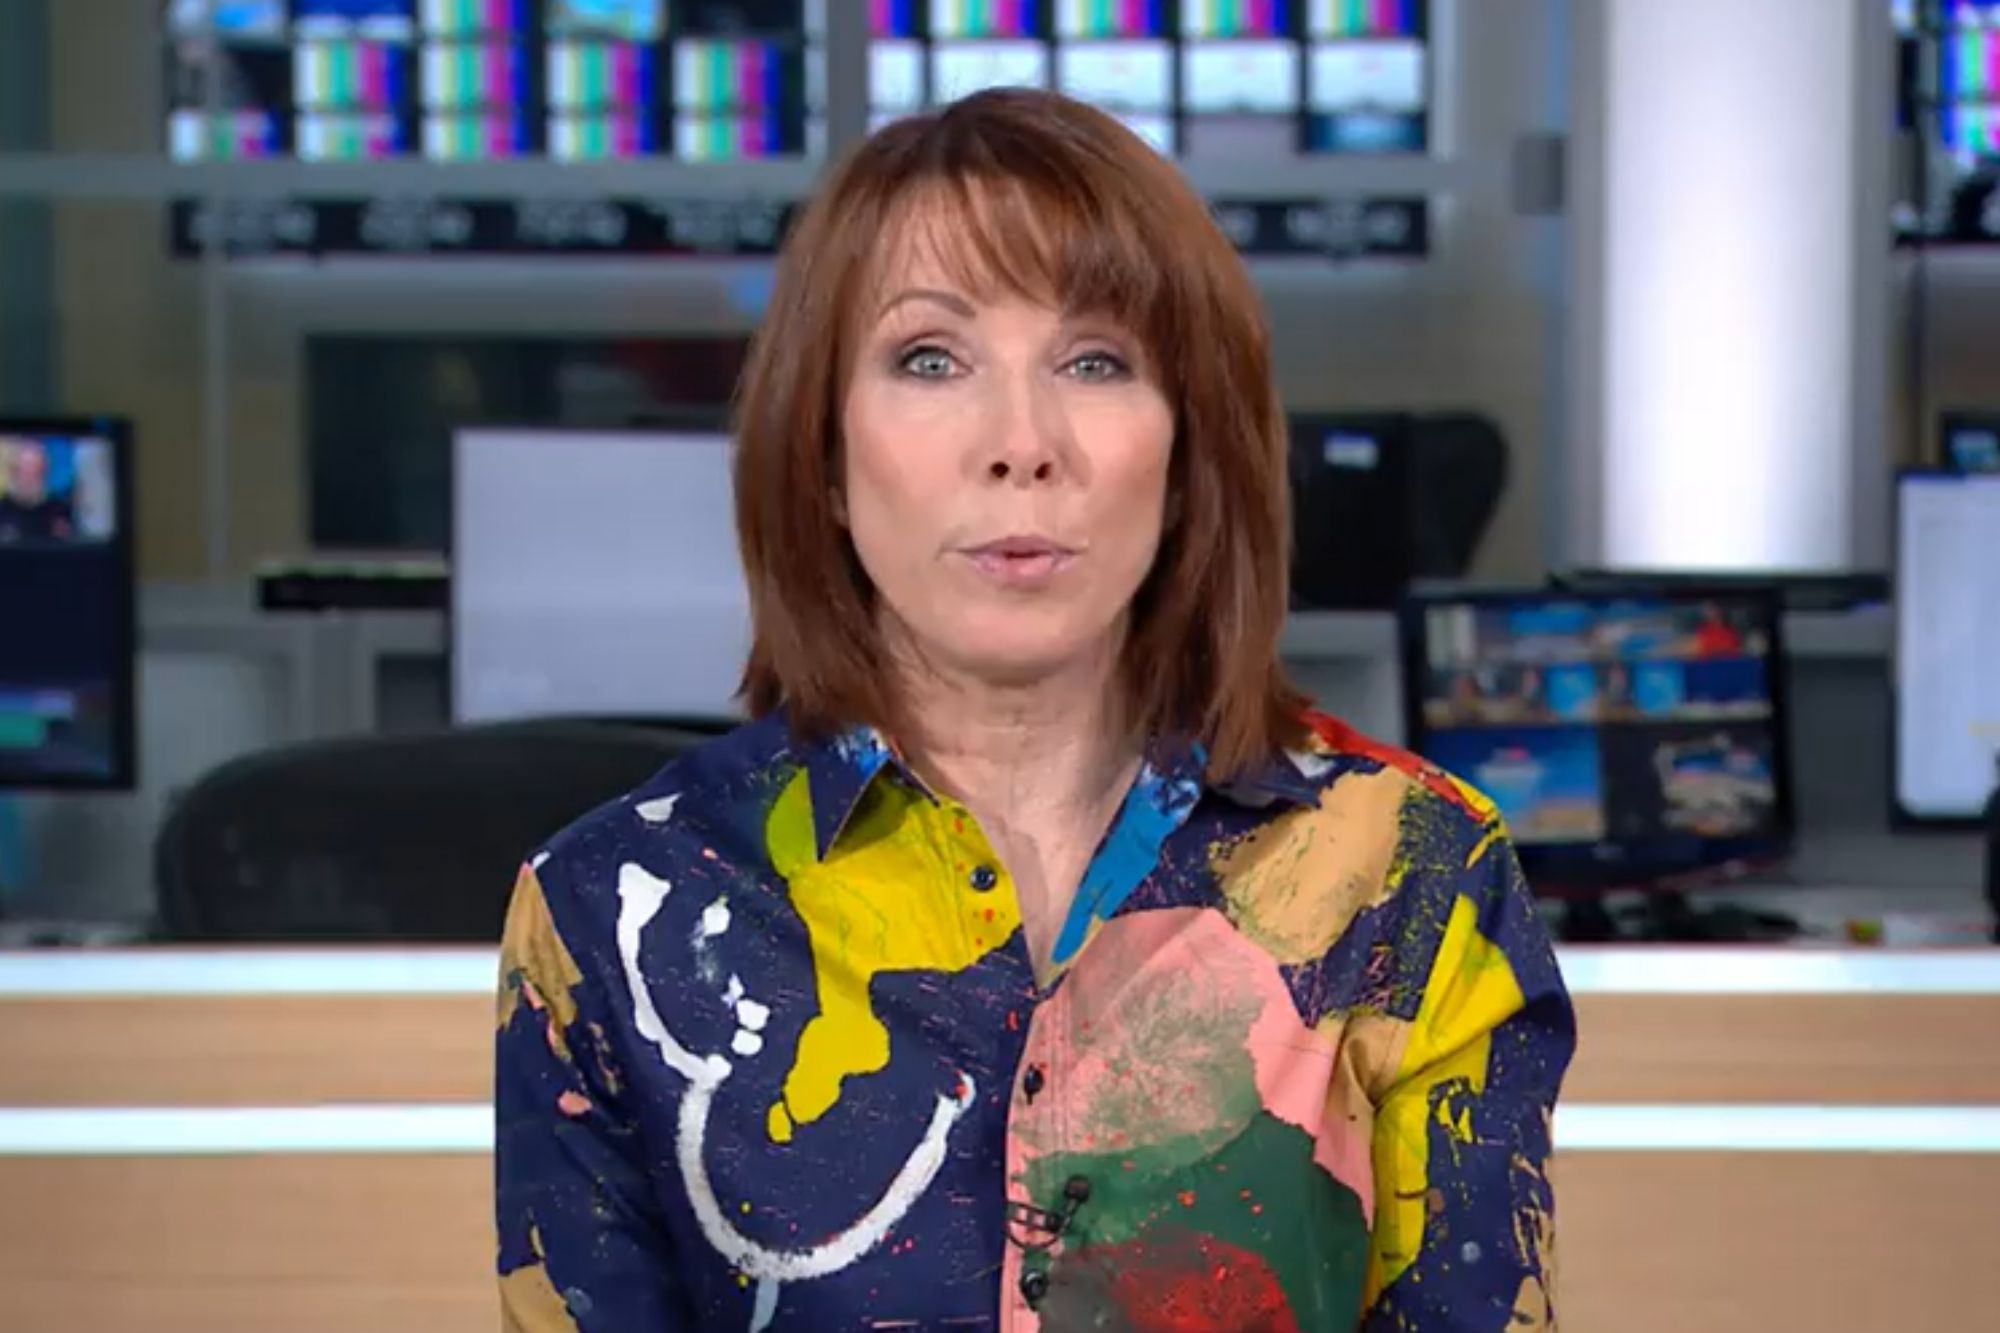 Die 63-jährige Sky News-Moderatorin nutzte die sozialen Medien, um die Neuigkeiten mit ihrer Fangemeinde zu teilen